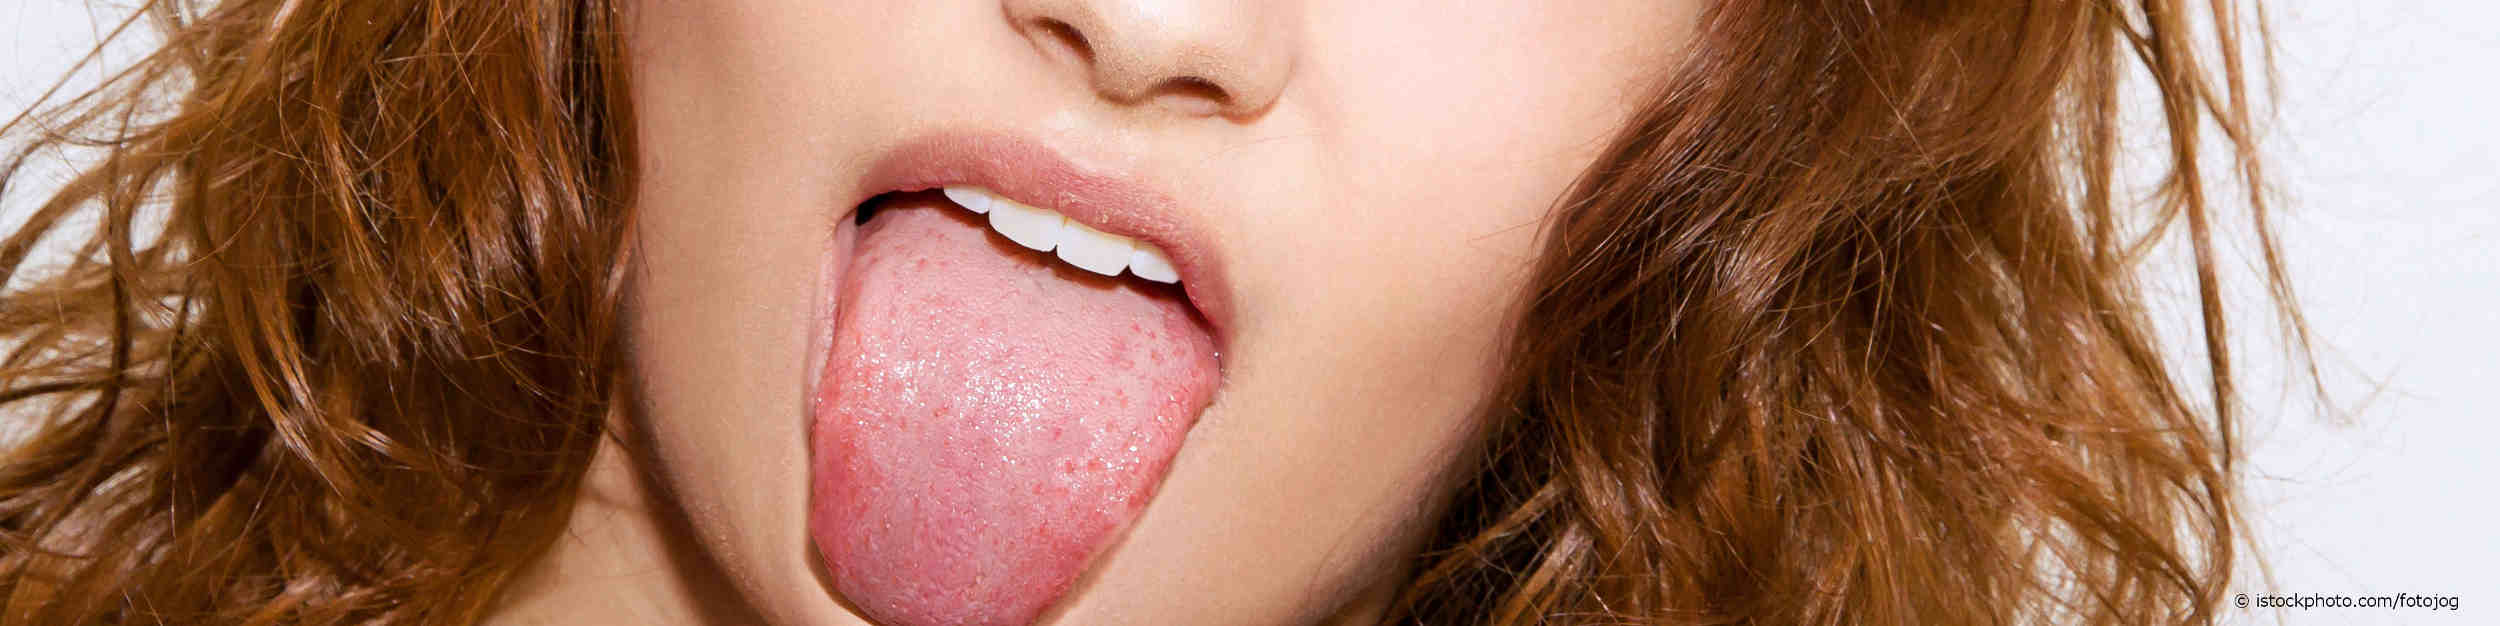 Junge Frau streckt ihre belegte Zunge heraus.